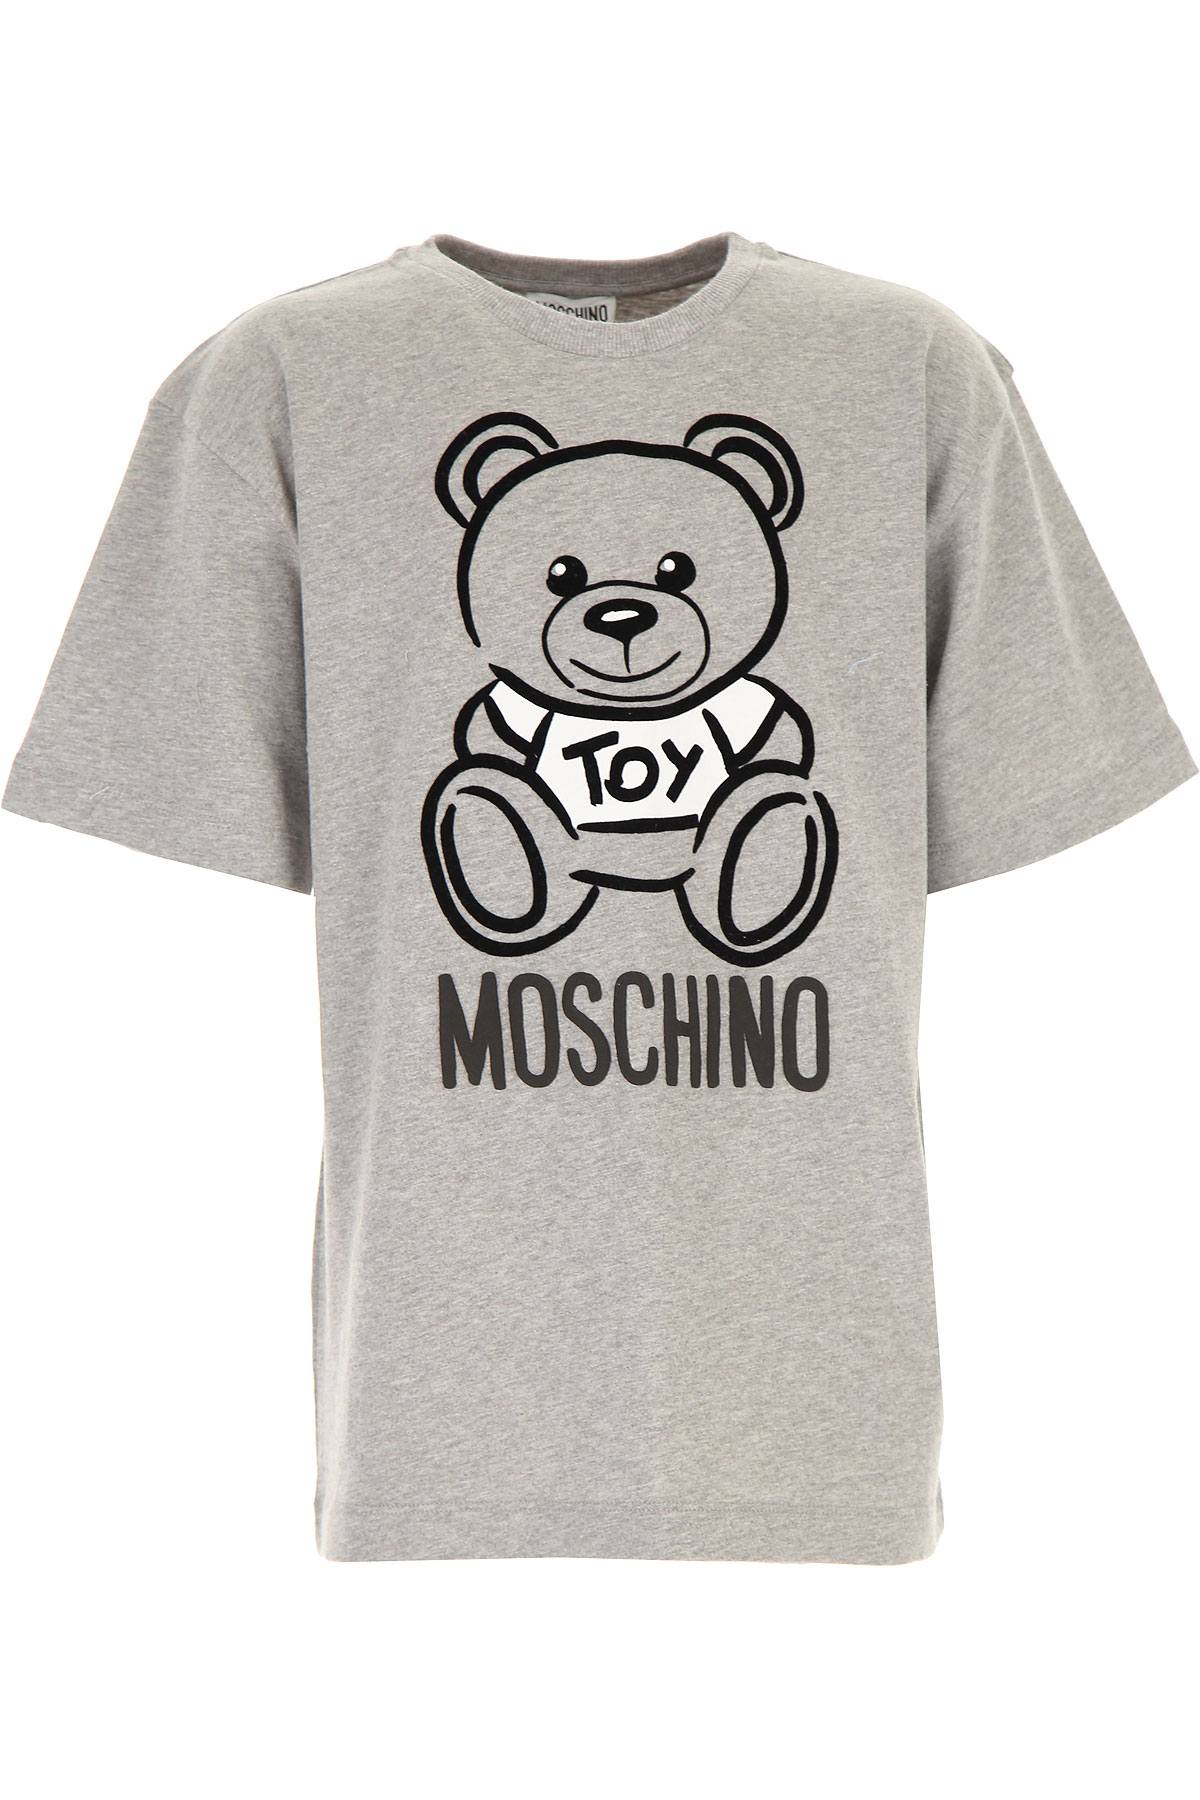 Moschino Kinder T-Shirt für Jungen Günstig im Sale, Grau, Baumwolle, 2017, 10Y 12Y 14Y